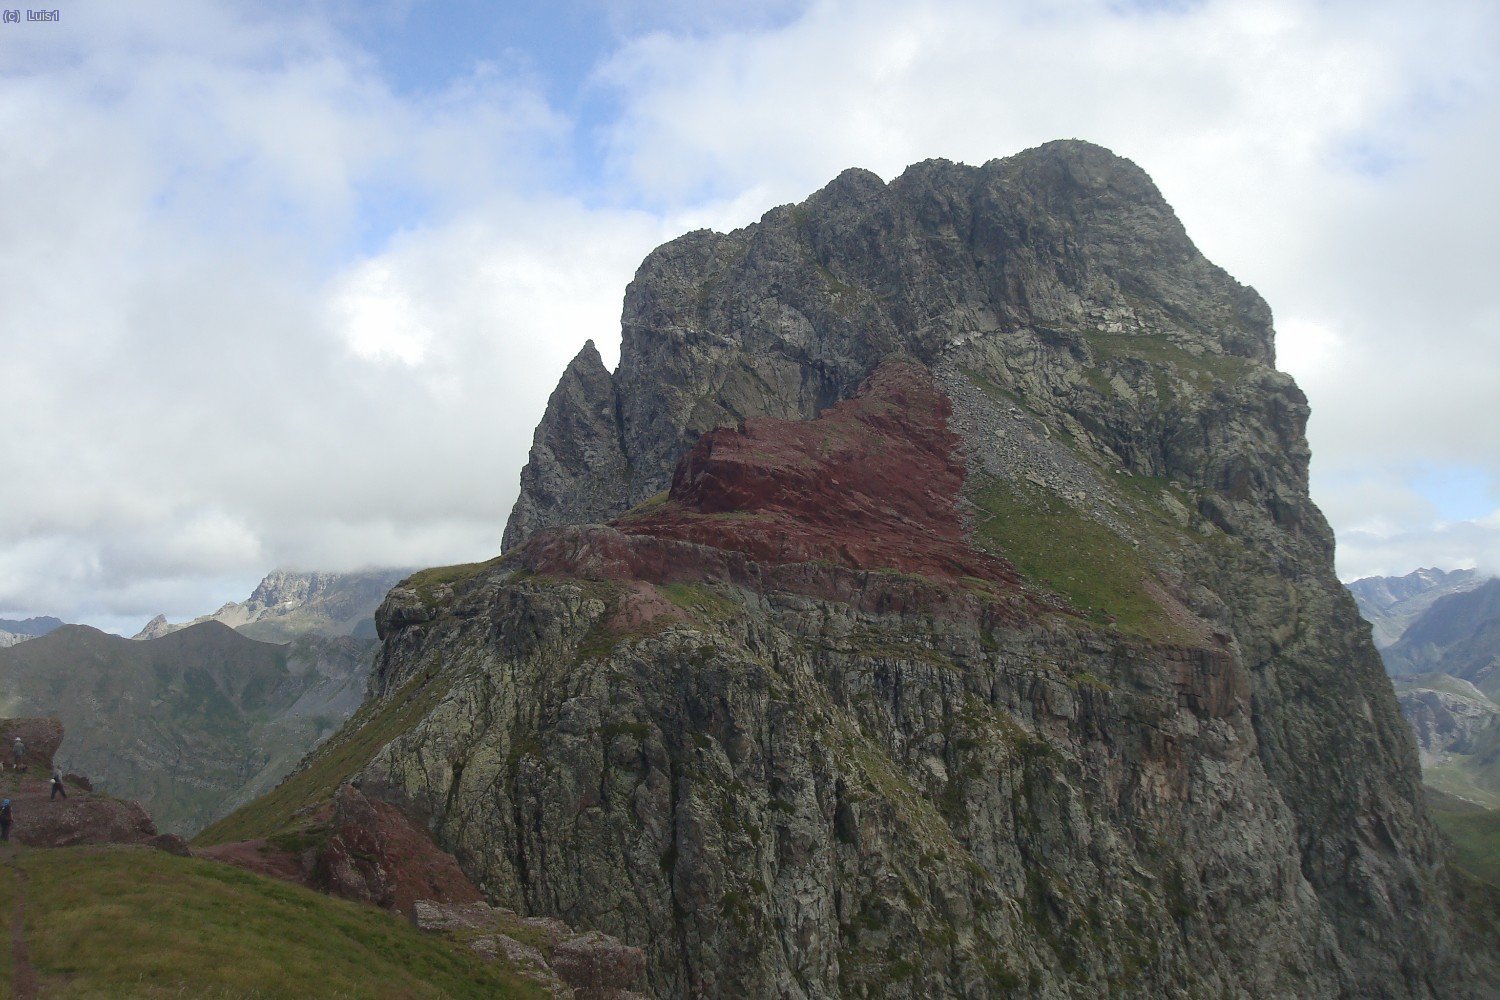 Subiendo al Vértice de Anayet, se puede distinguir la senda de acceso al Pico de Anayet.